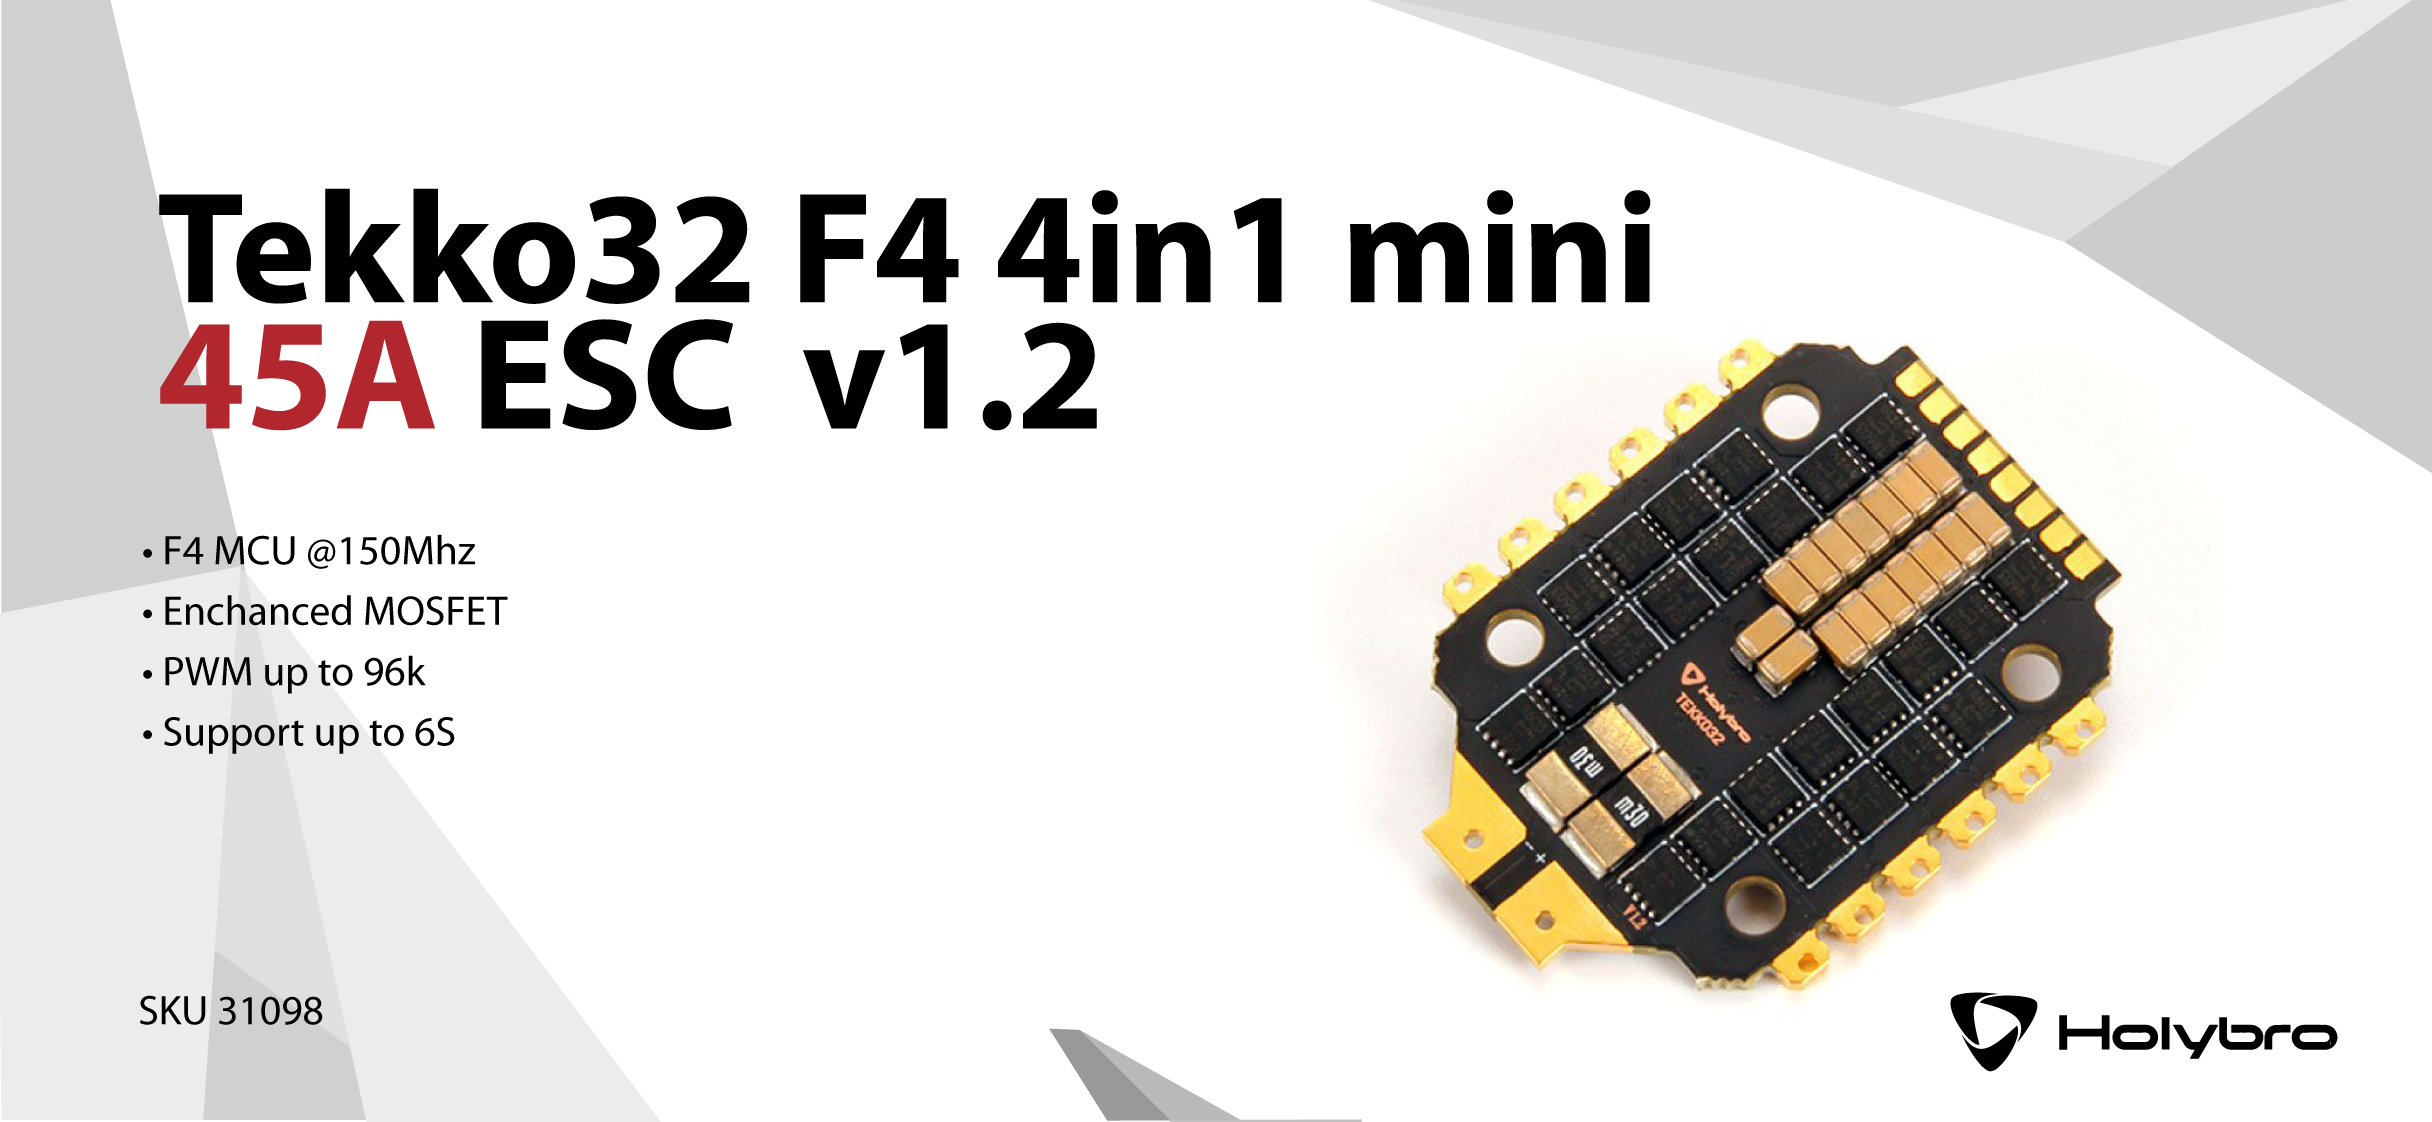 Tekko32 F4 4in1 mini 45A ESC v1.2